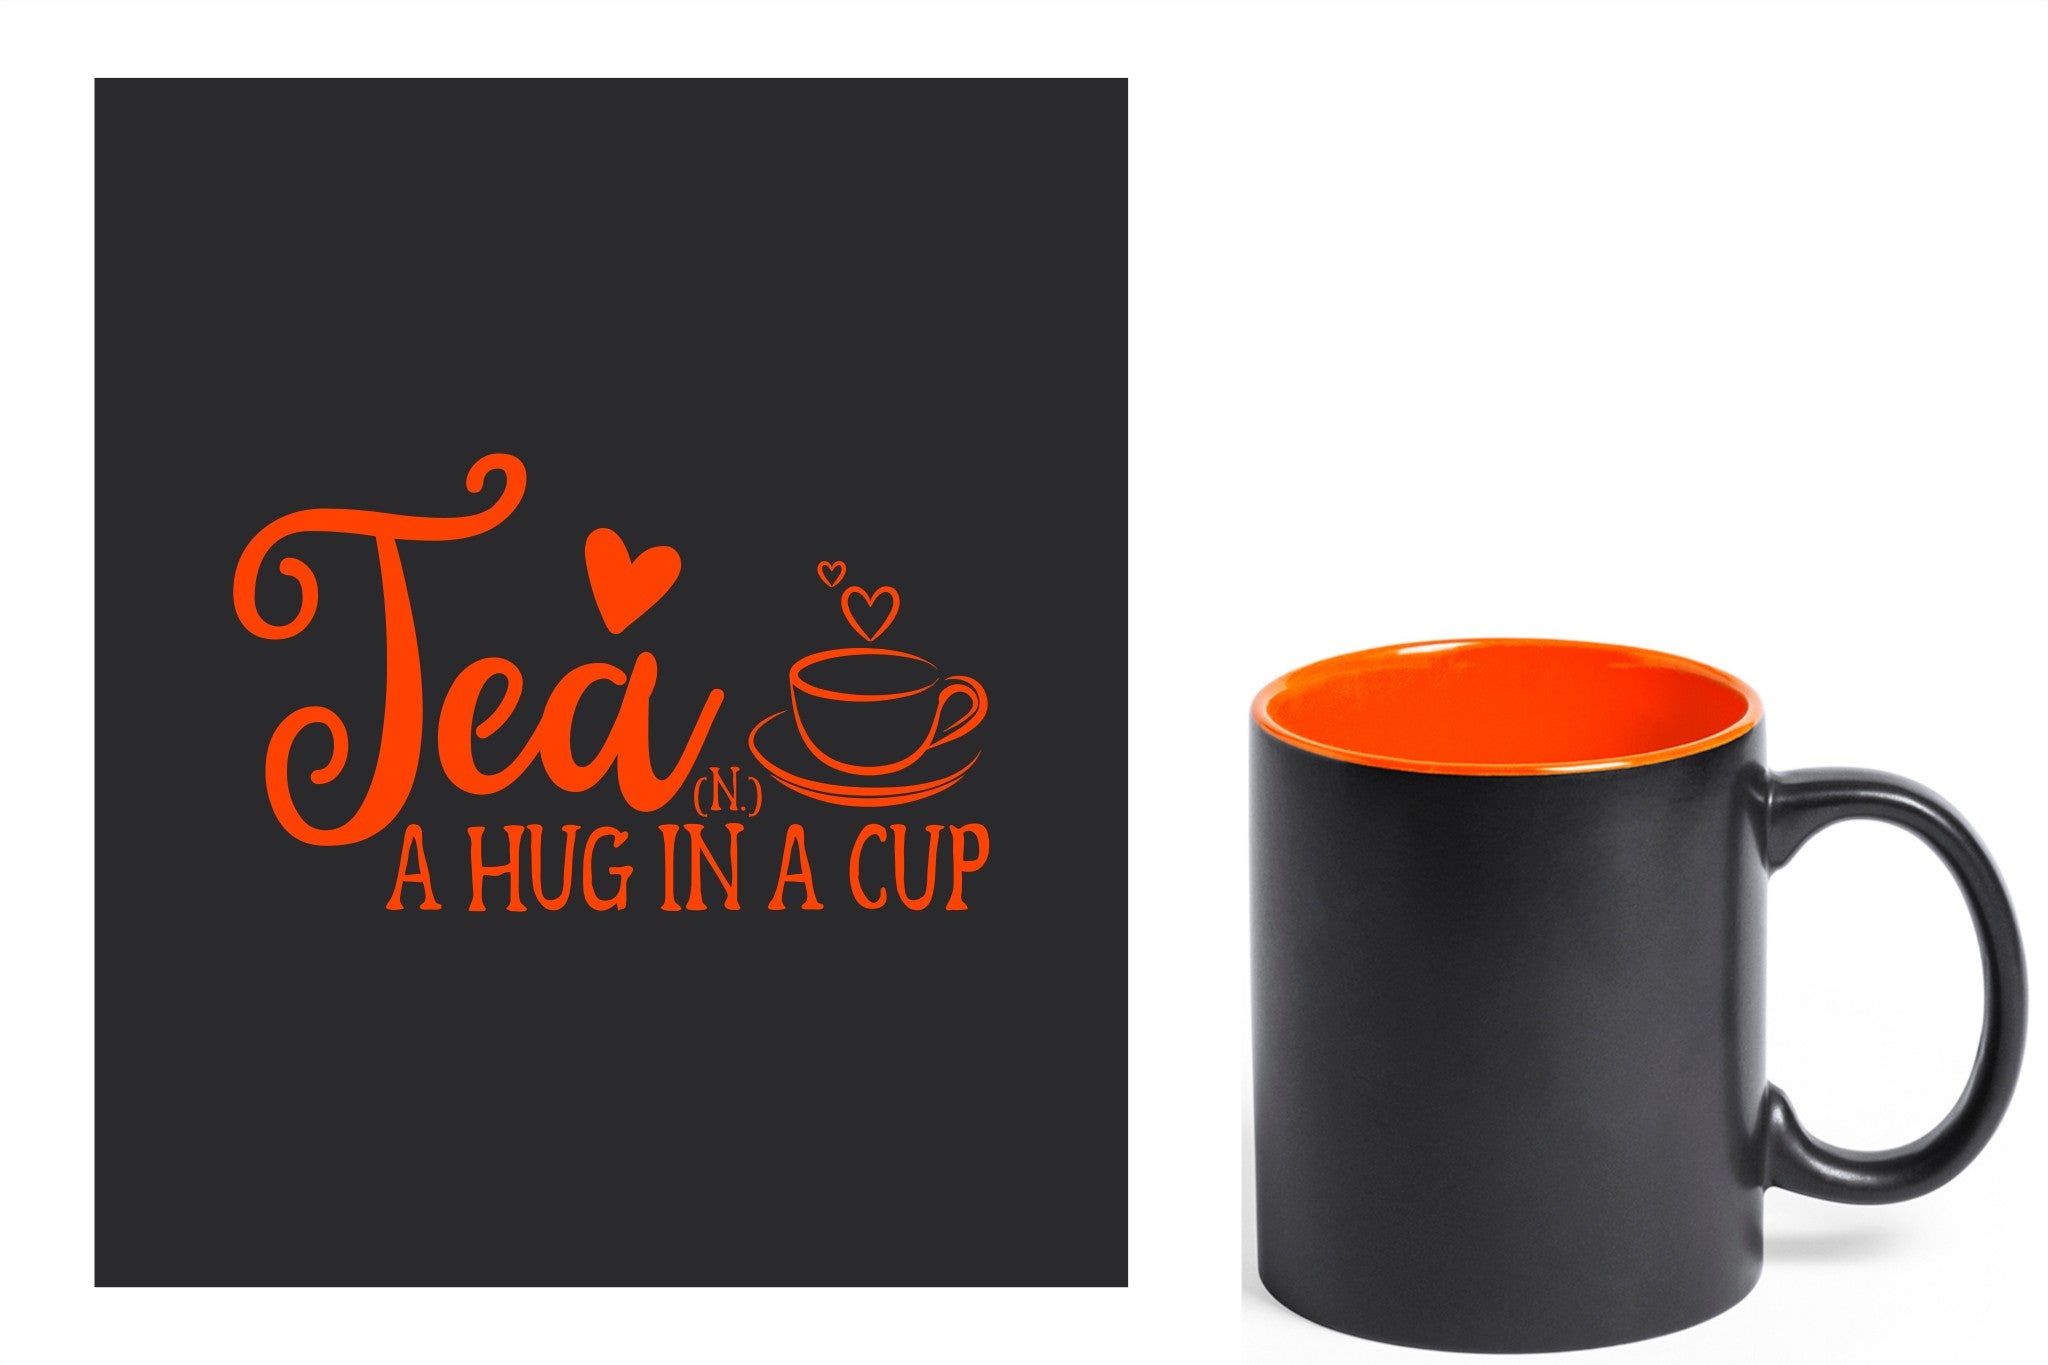 zwarte keramische mok met oranje gravure  'Tea and a hug in a cup'.